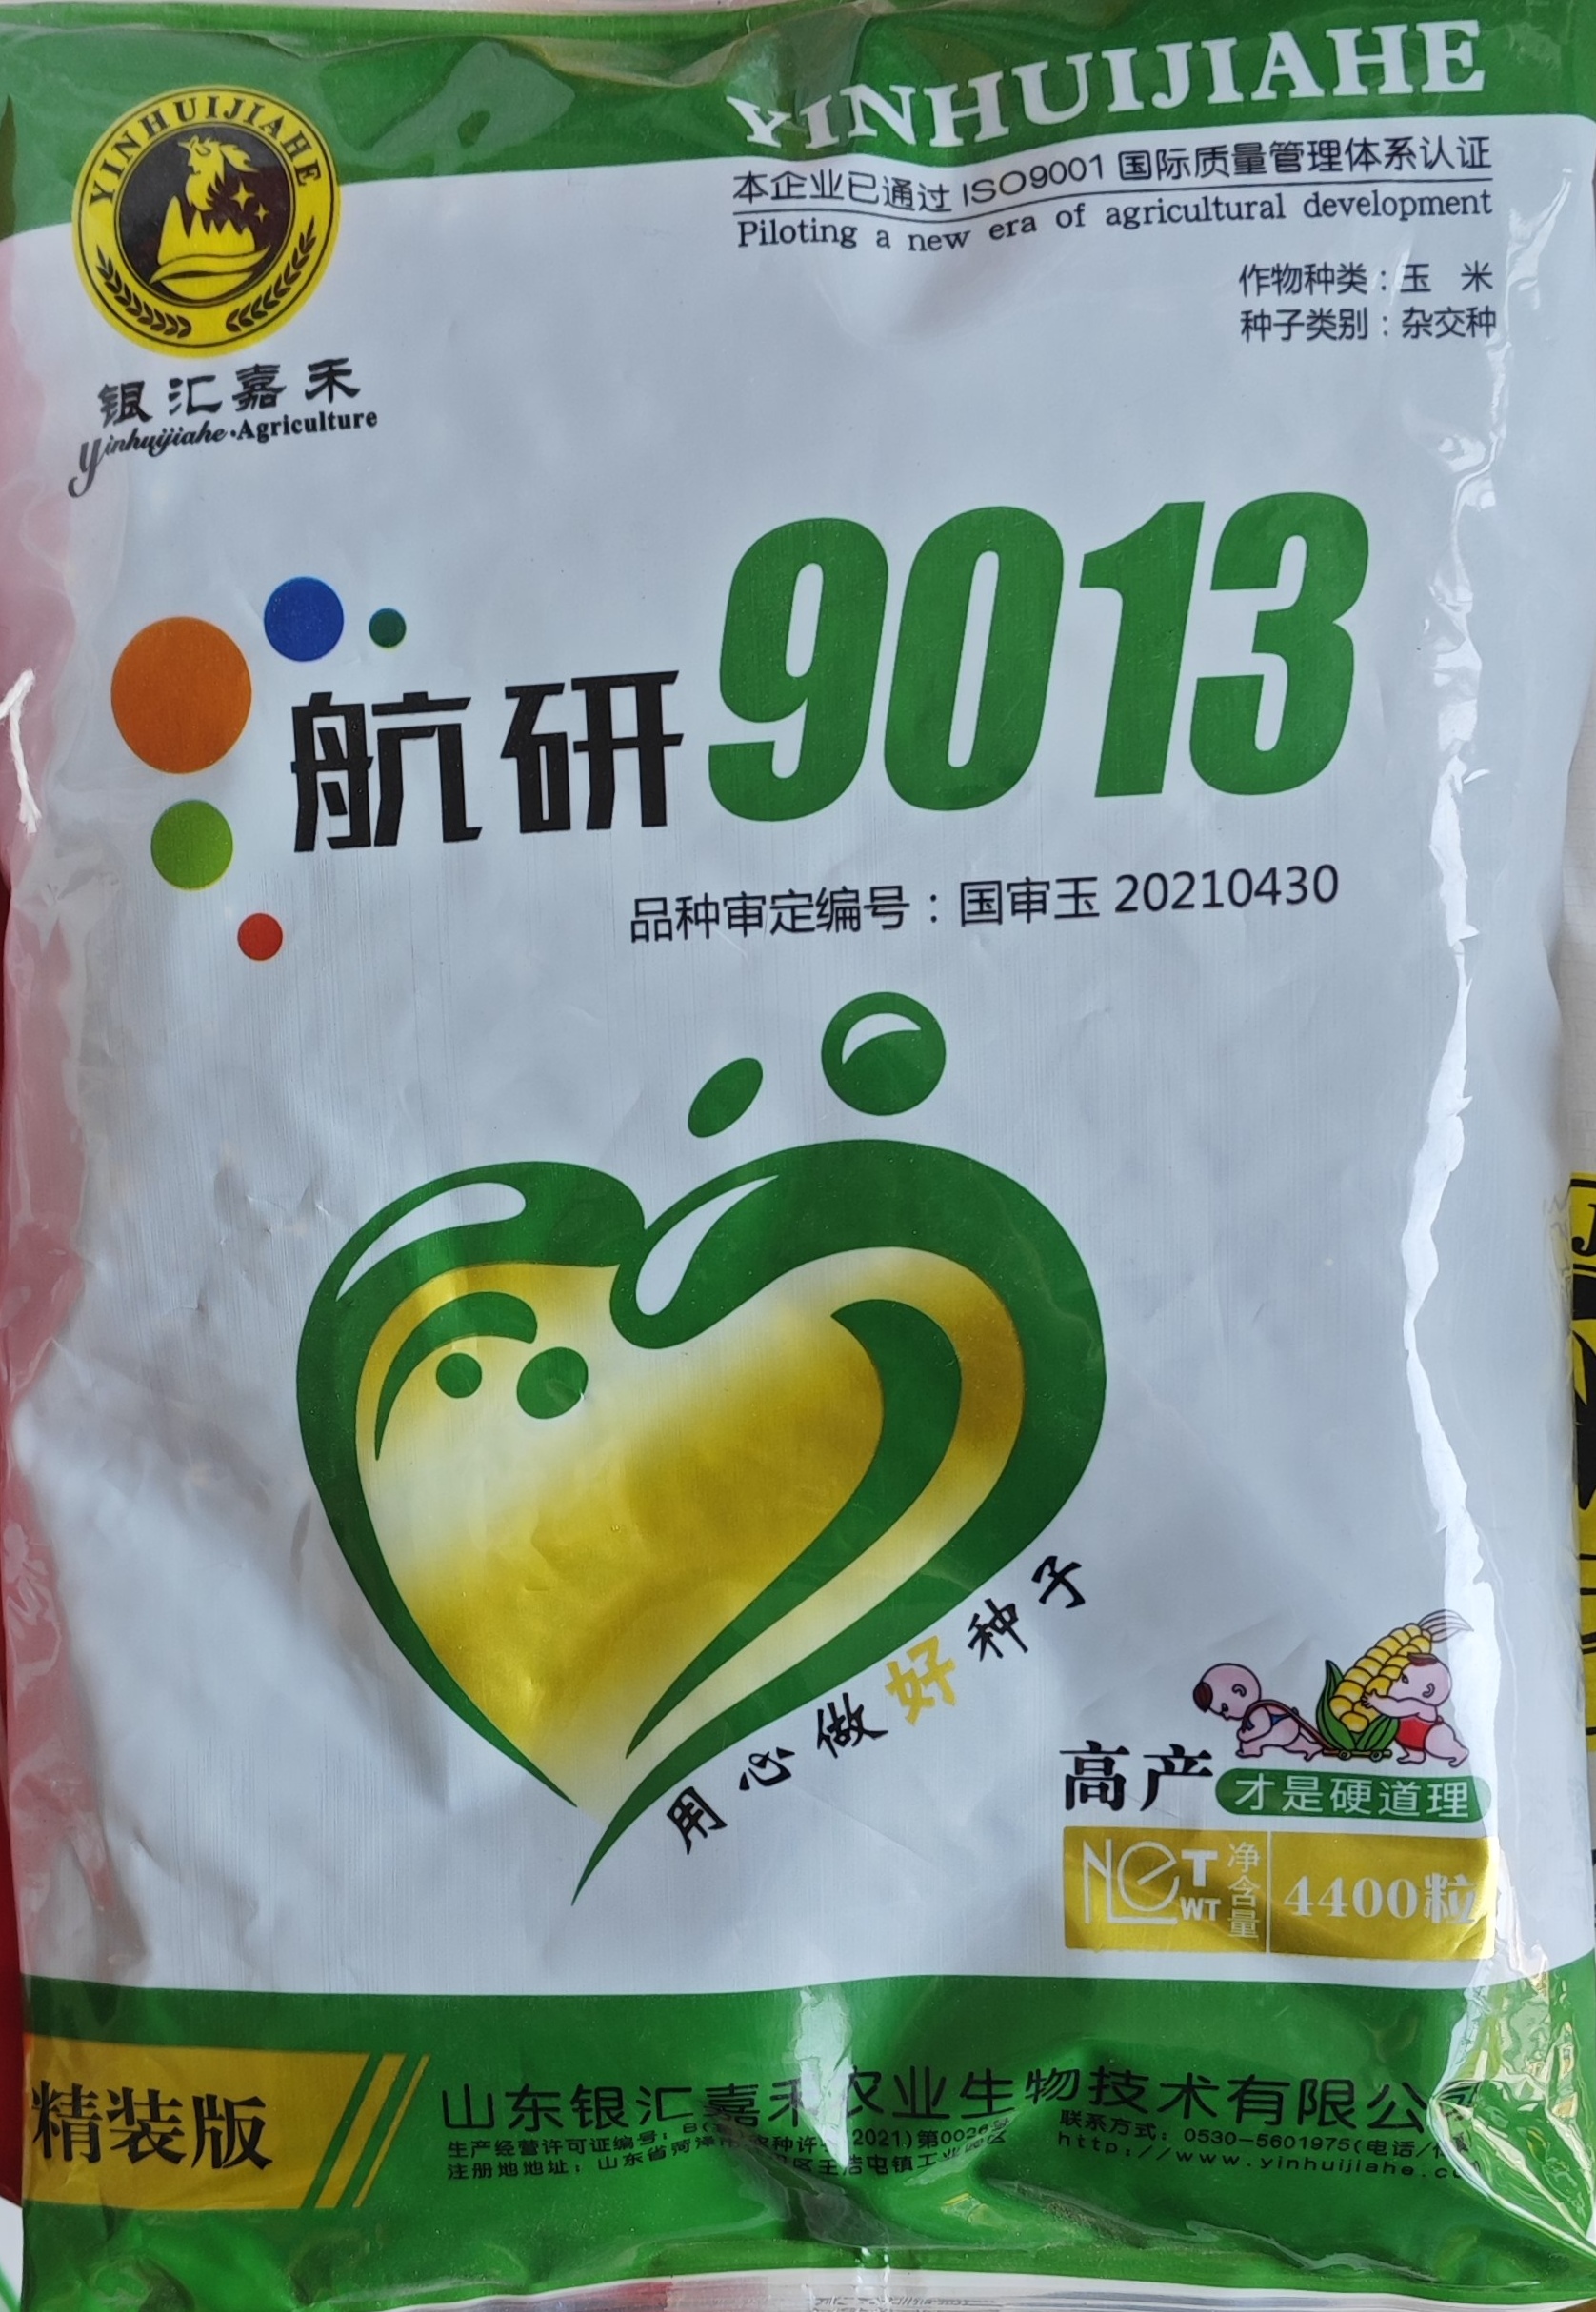 航研9013玉米种苞米种高产抗病